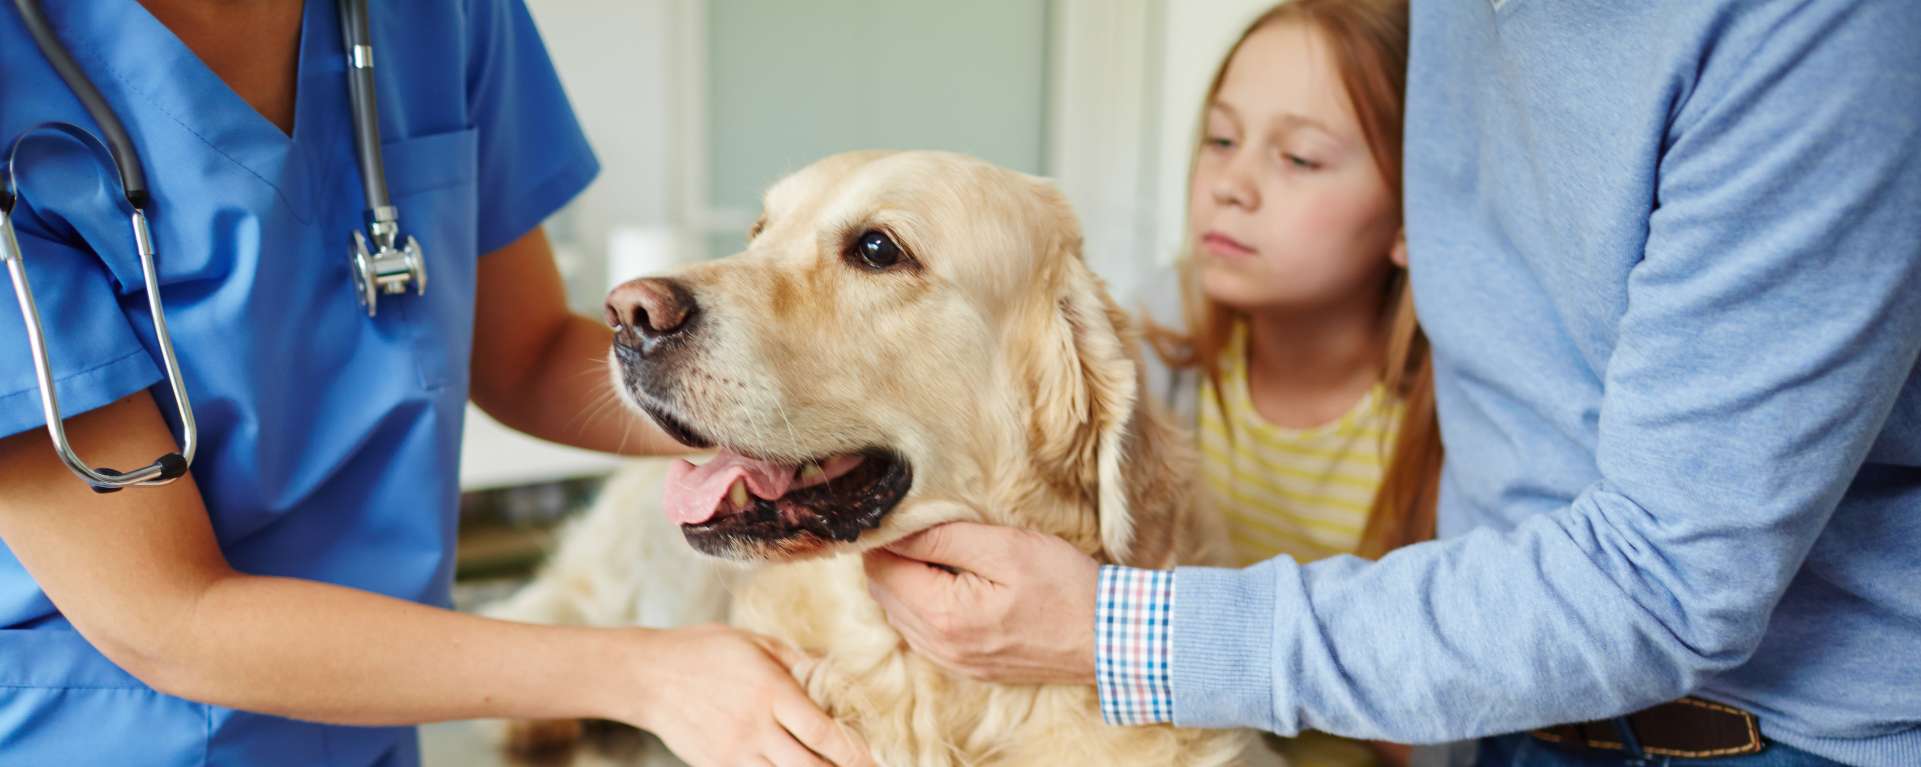 Sterilisation beim Hund Vorteile und Nachteile Allianz